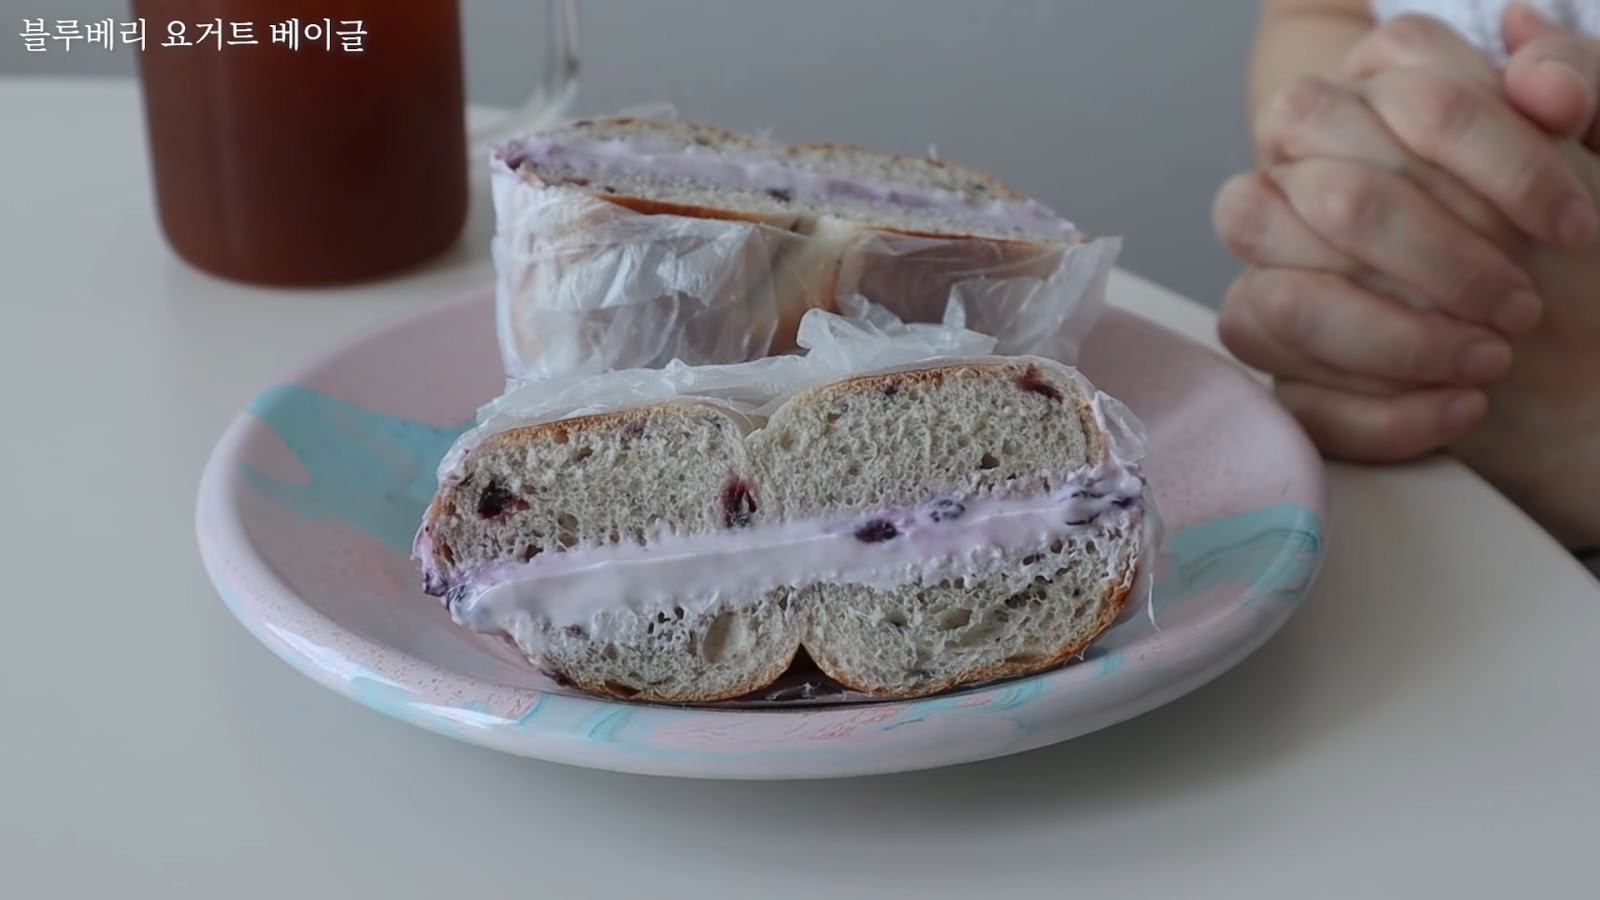 Vlogger Hàn chia sẻ bí quyết giảm 10kg nhờ tự tay làm những chiếc sandwich theo công thức của riêng mình - Ảnh 2.